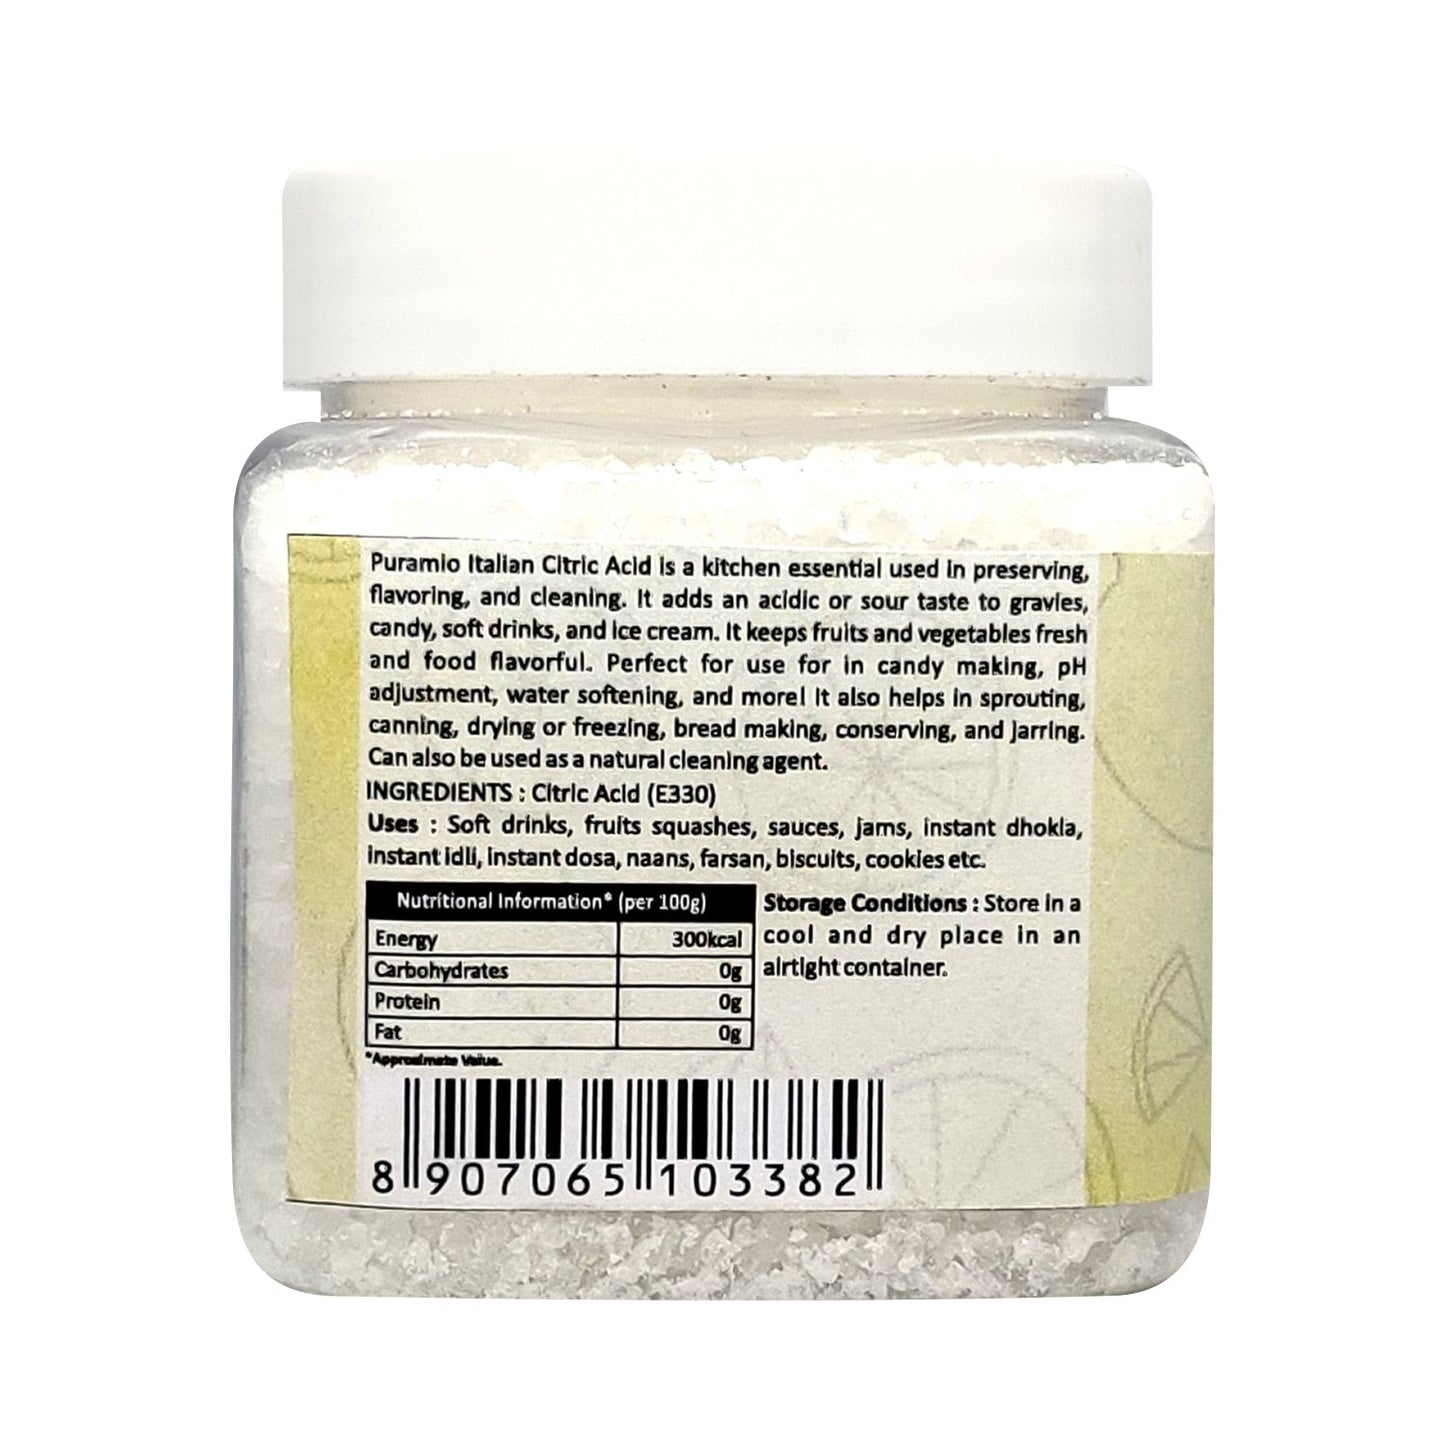 Puramio Citric Acid , 250g